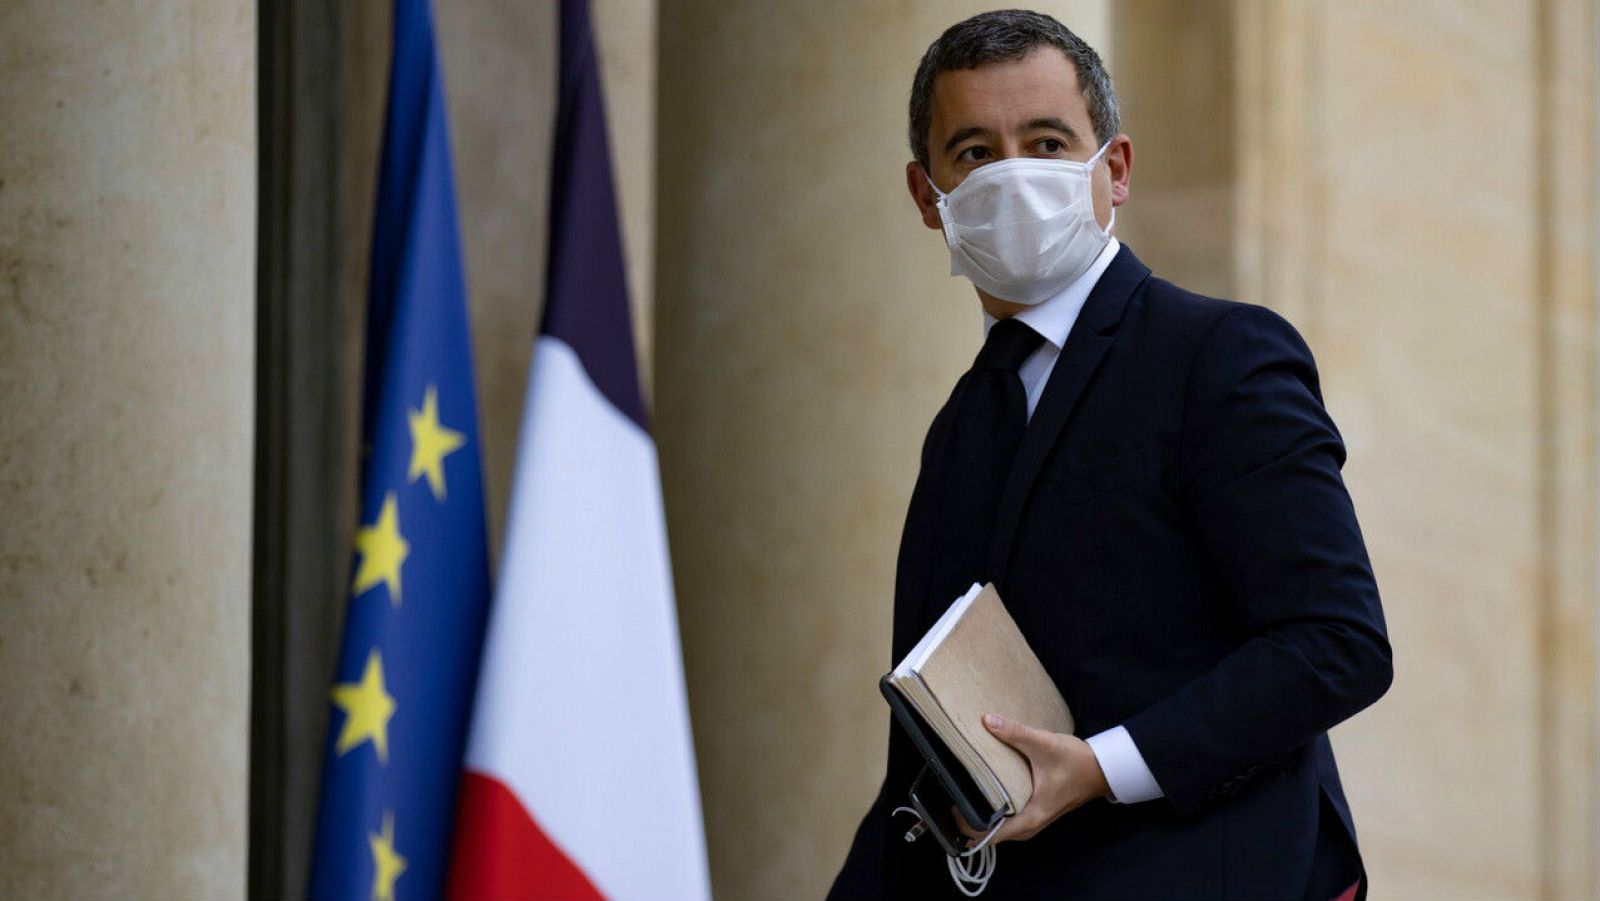 El ministro del Interior francés, Gerald Darmanin, llega para una reunión en el Palacio del Elíseo en París, Francia.